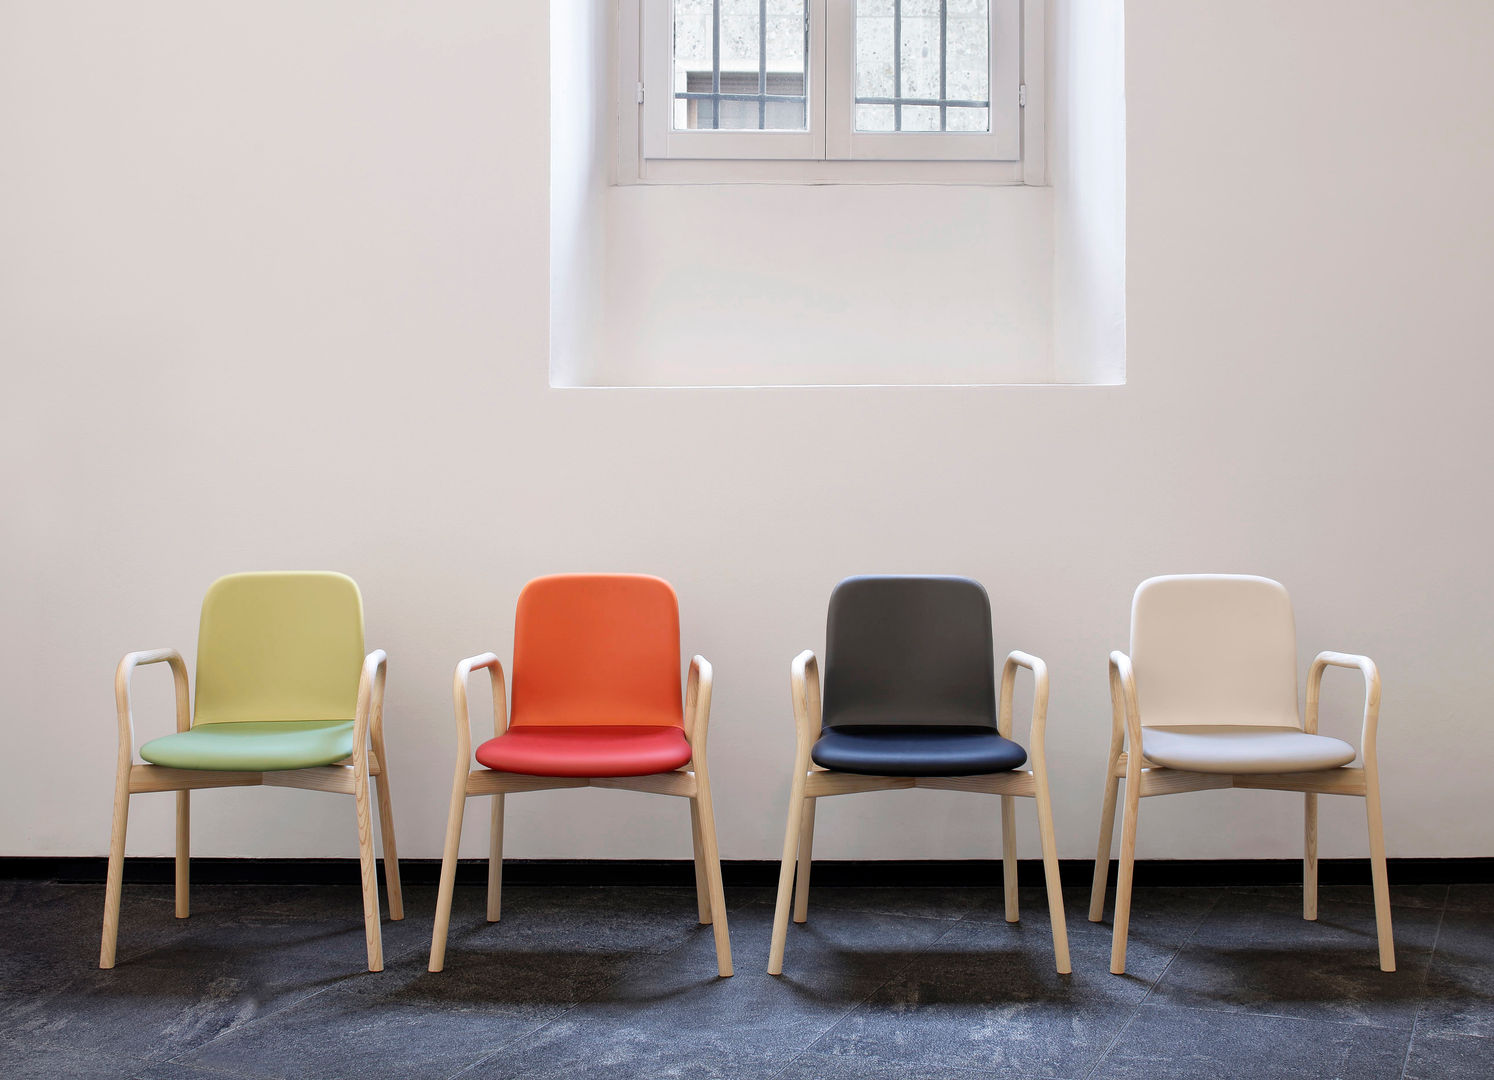 Two Tone chair, IWASAKI DESIGN STUDIO IWASAKI DESIGN STUDIO Dining room design ideas Chairs & benches